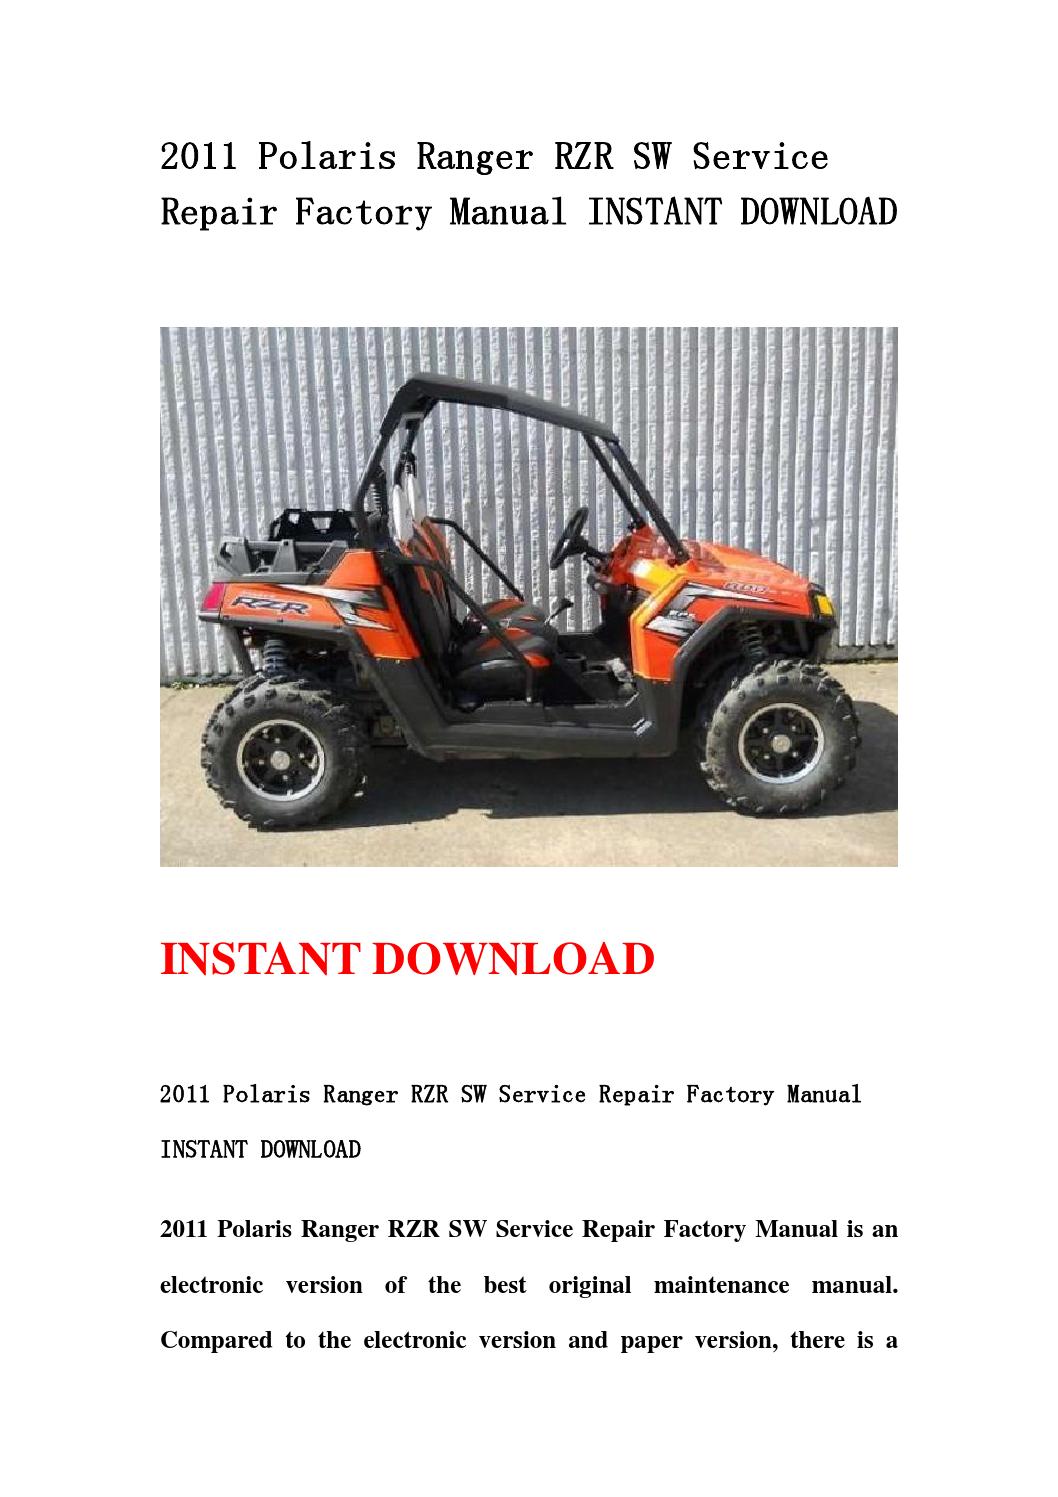 polaris rzr repair manual download